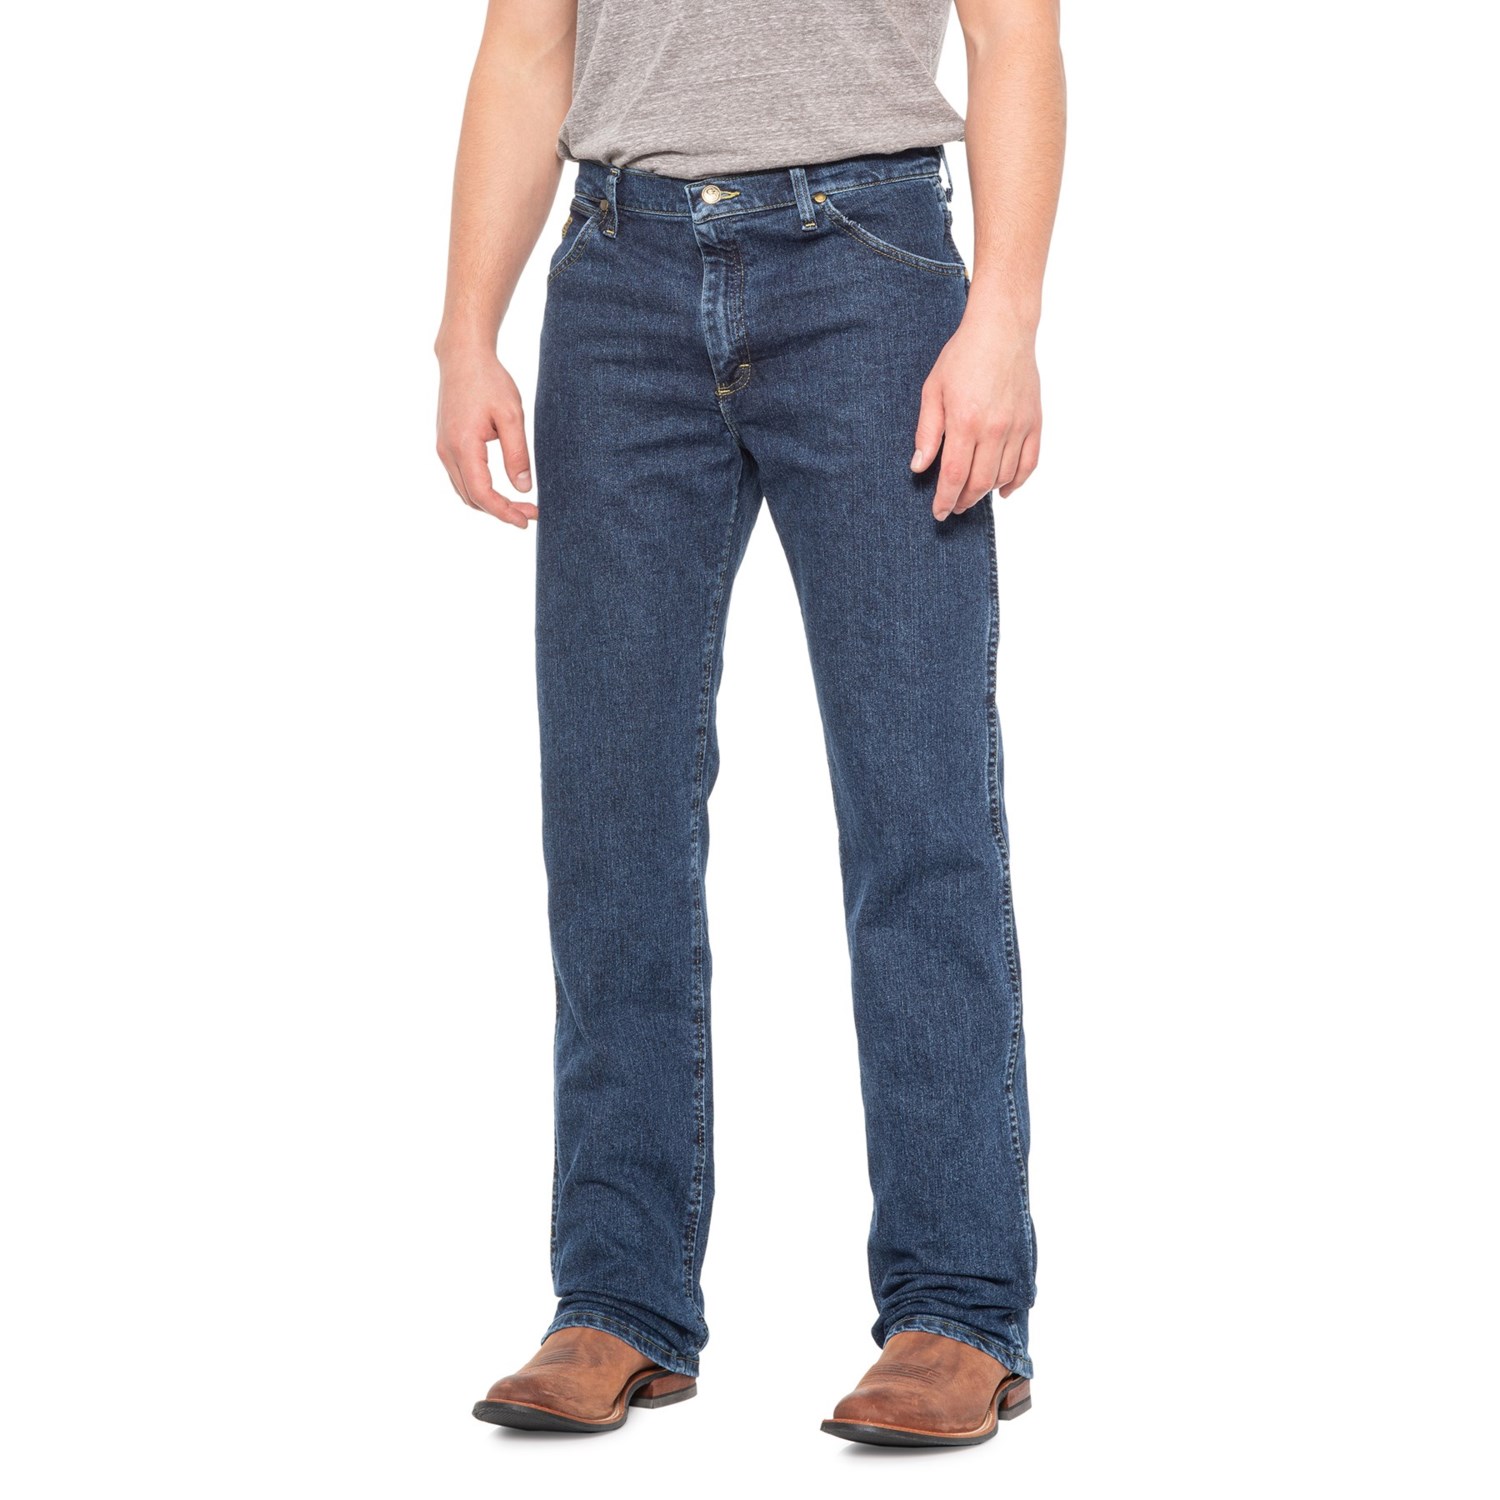 Wrangler George Strait Cowboy Cut® Regular Fit Jeans (For Men) - Save 51%